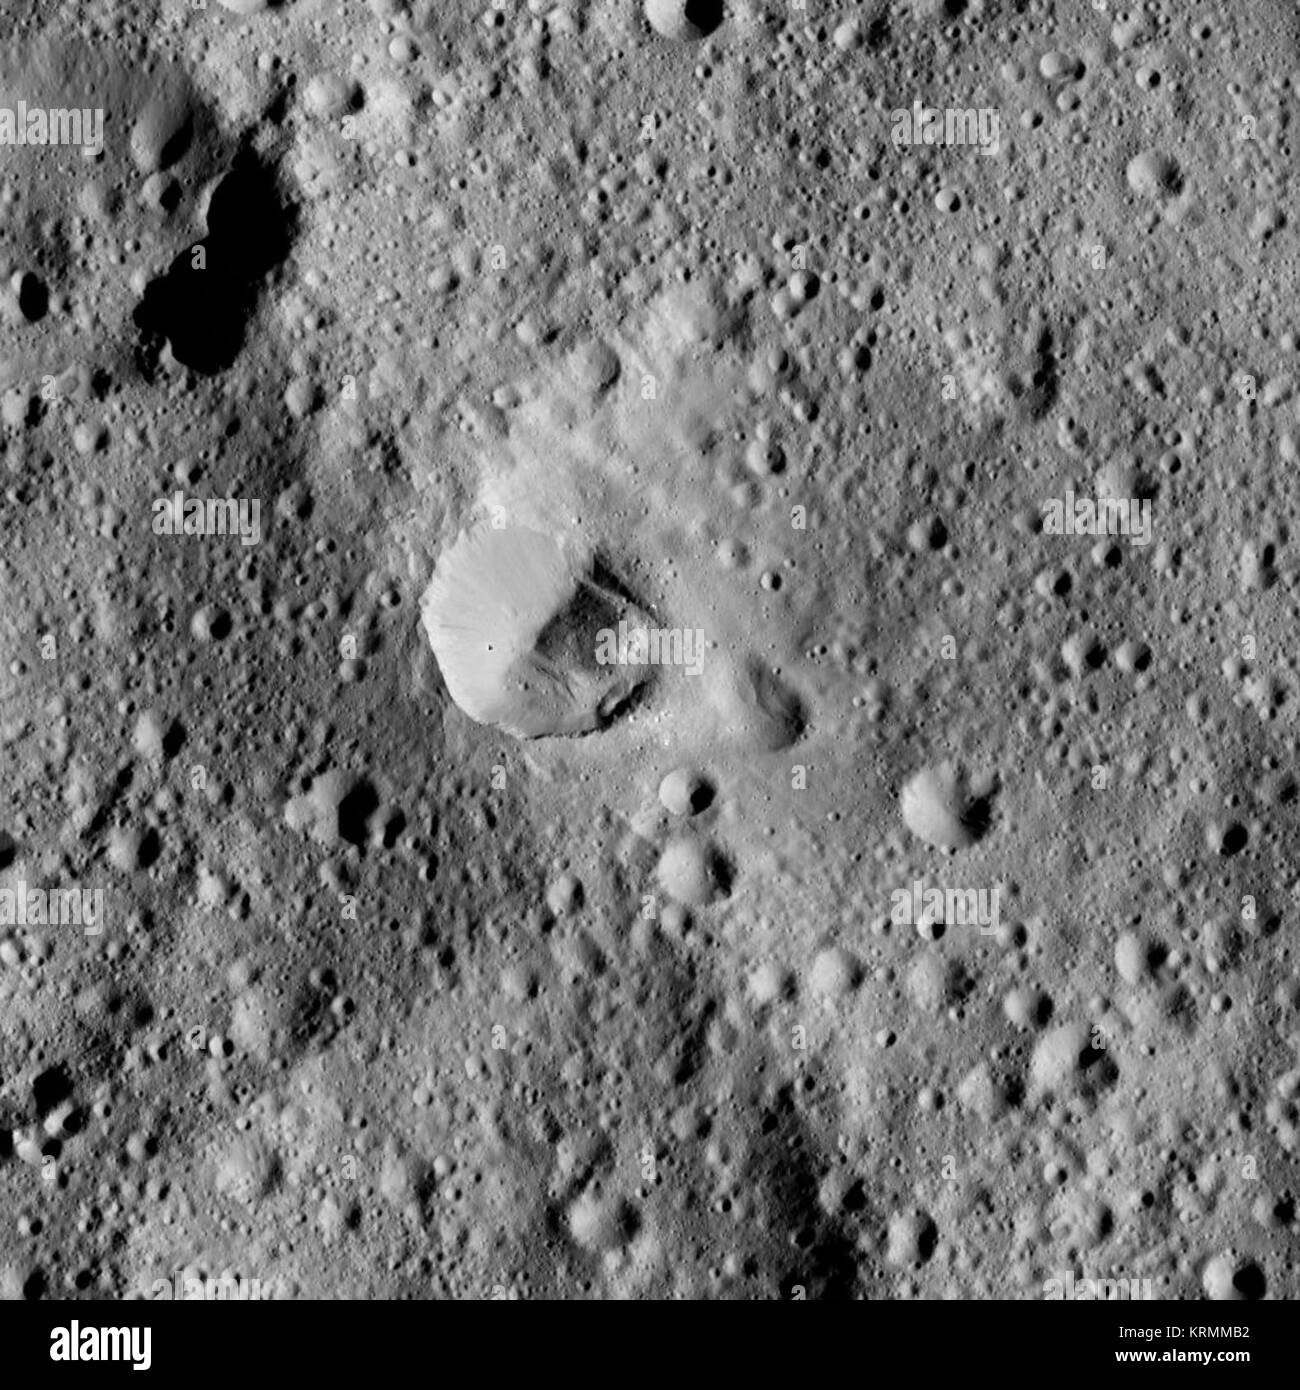 PIA20680-Ceres-DwarfPlanet-Dawn-4thMapOrbit-LAMO-100-20160418 immagine Foto Stock